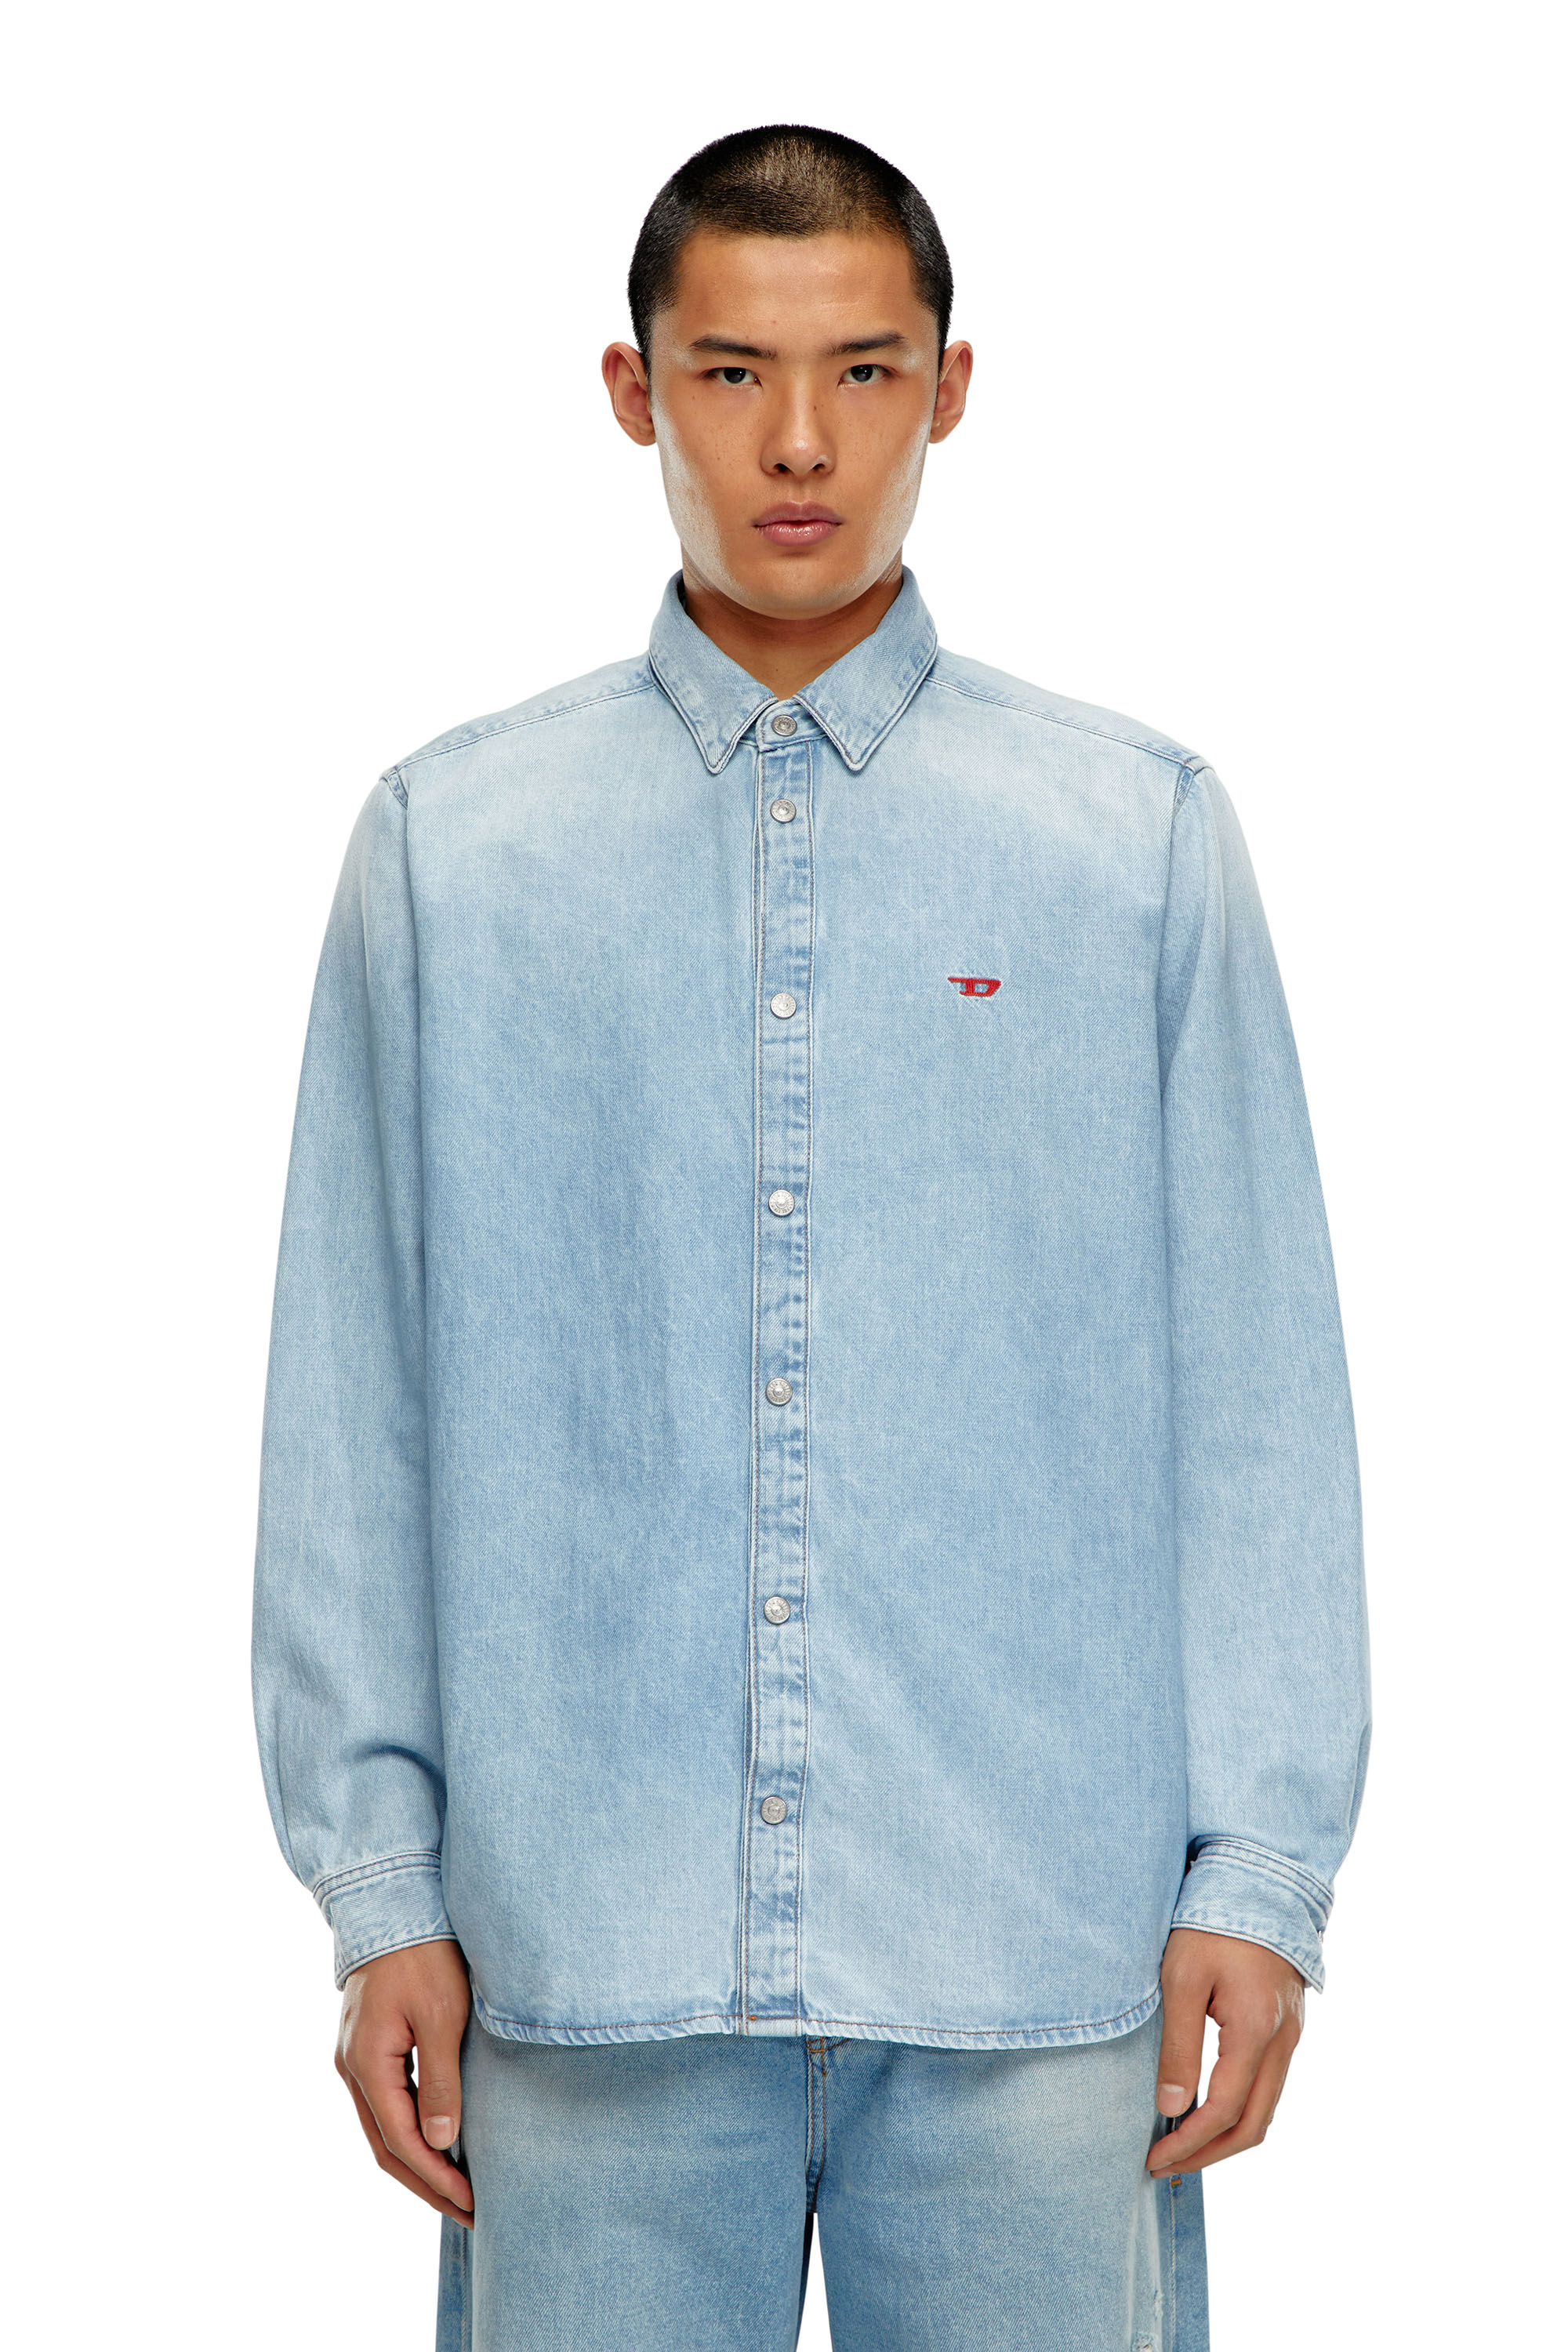 Diesel - D-SIMPLY, Male Shirt in denim in Blue - Image 3